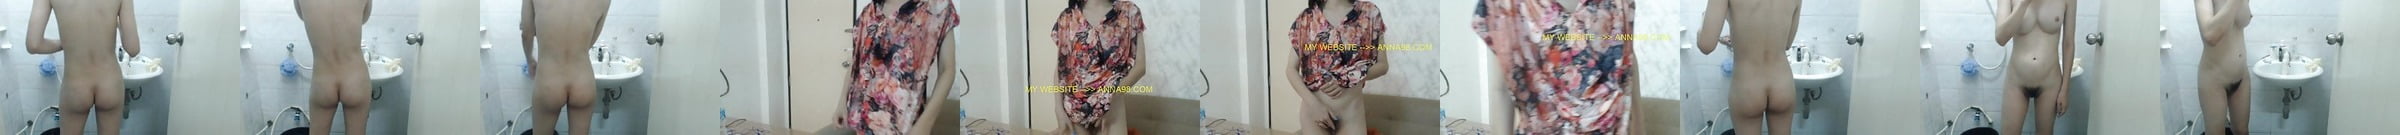 Brazilian Deep Lesbian Kiss Free American Dad Lesbian Porn Video